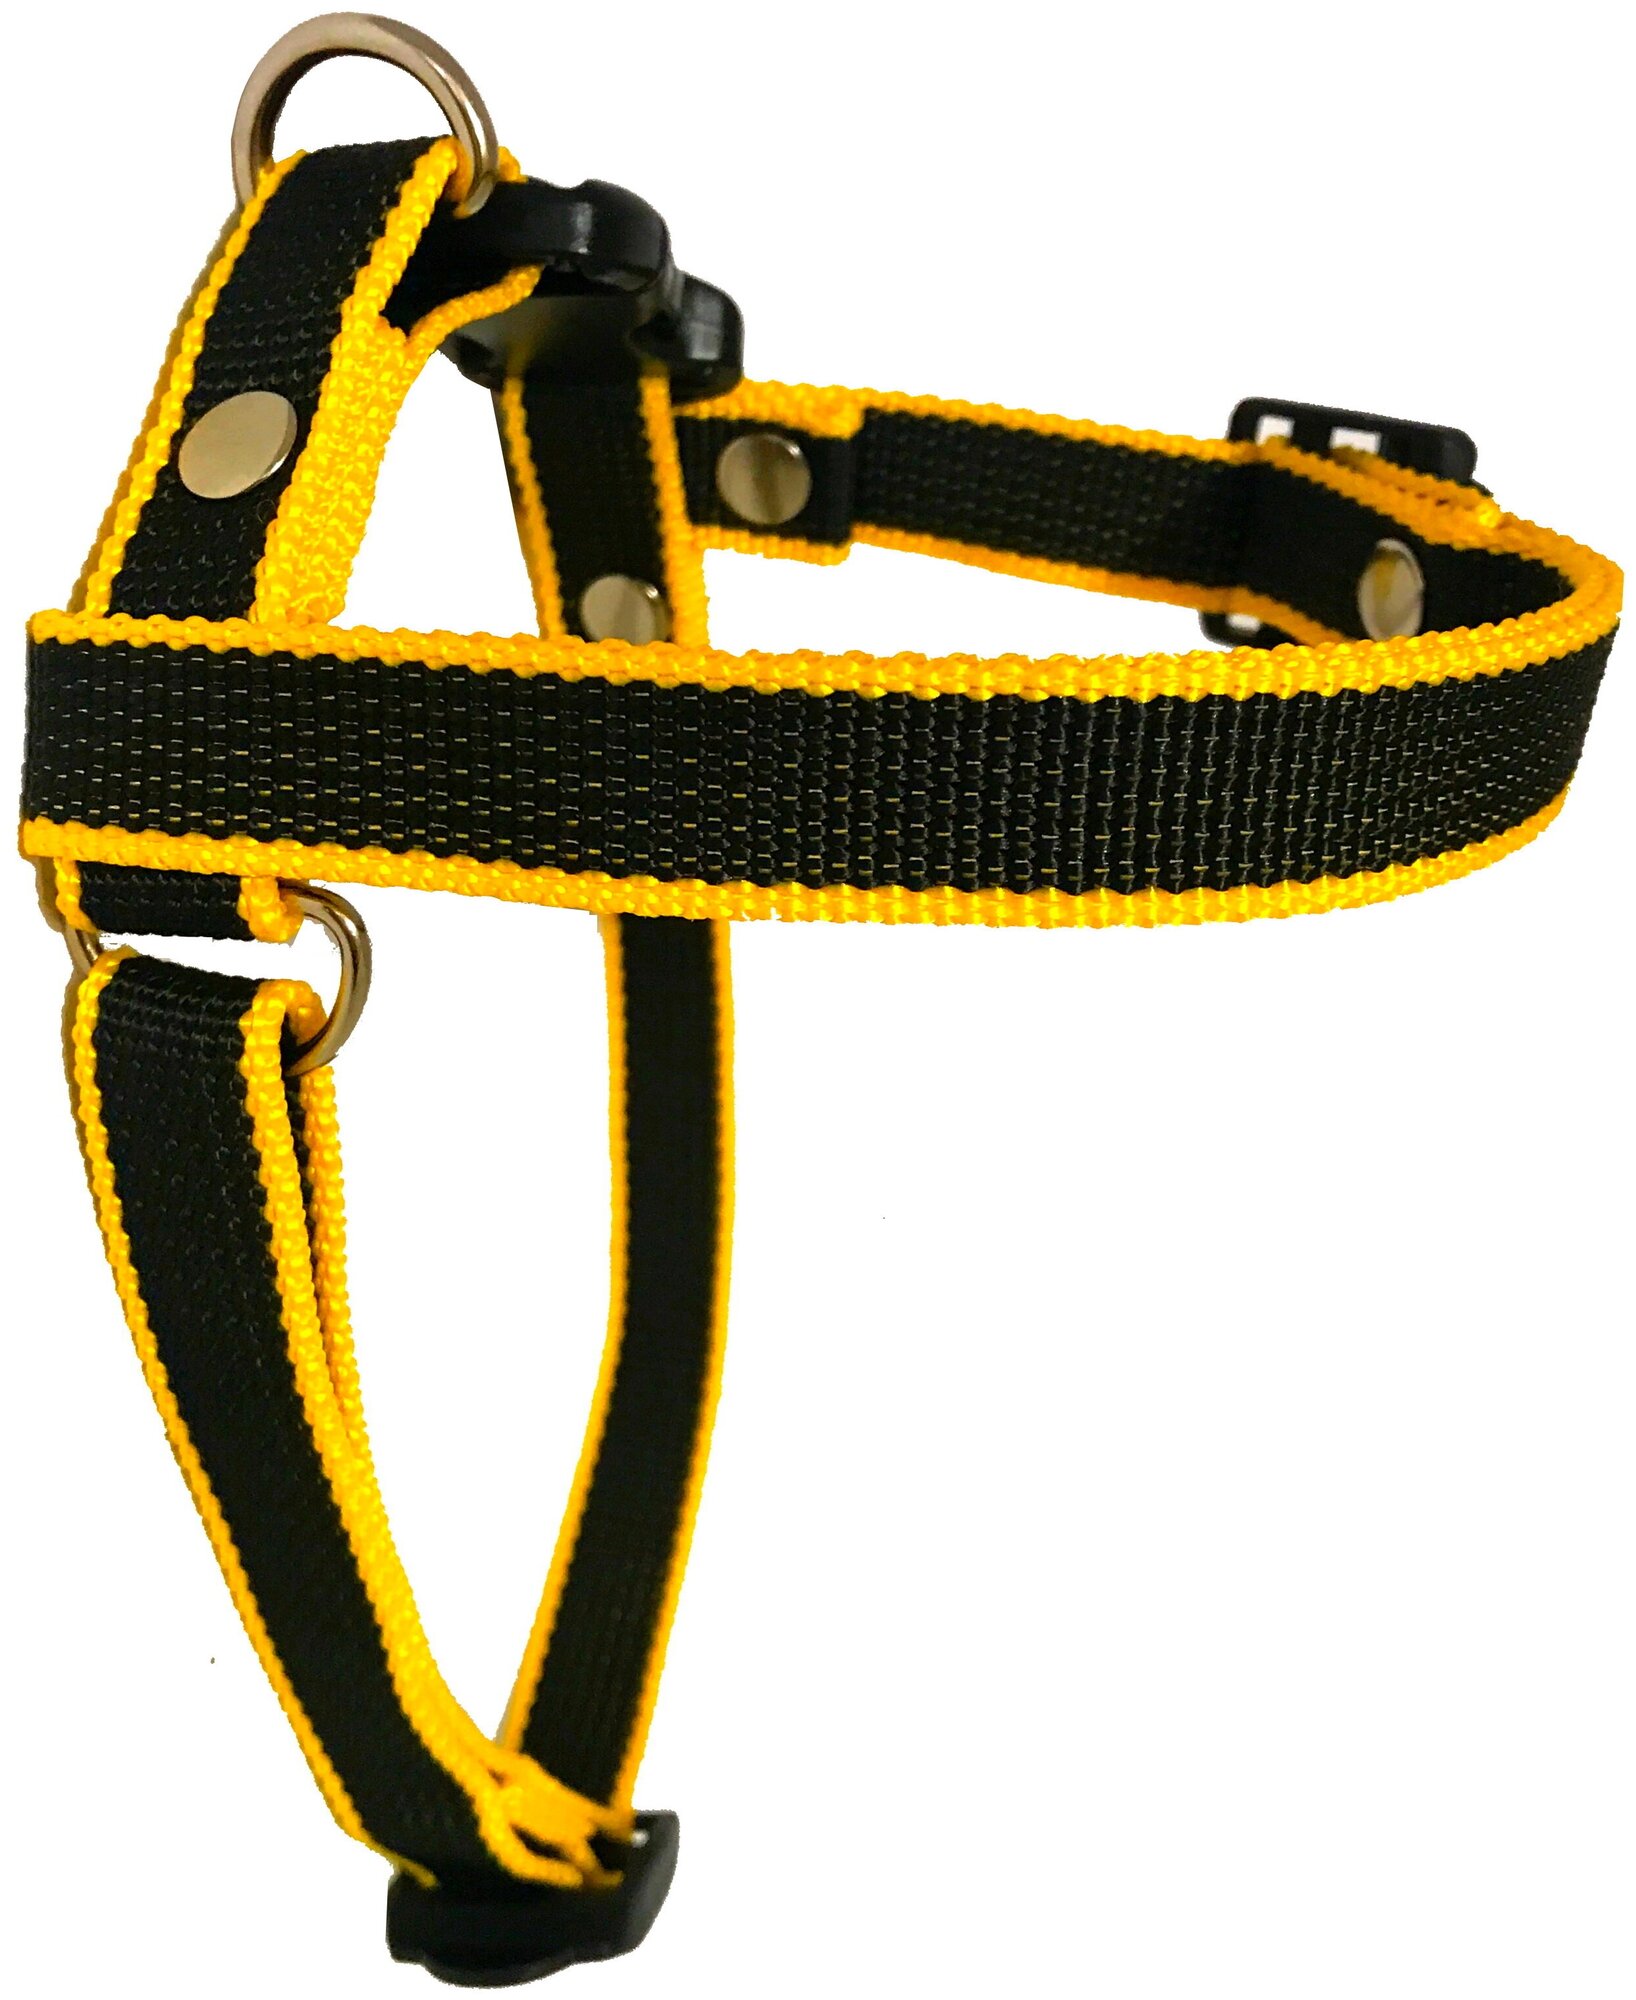 Шлейка для собак Petsare обхват груди 28-40 см, черный желтый кант